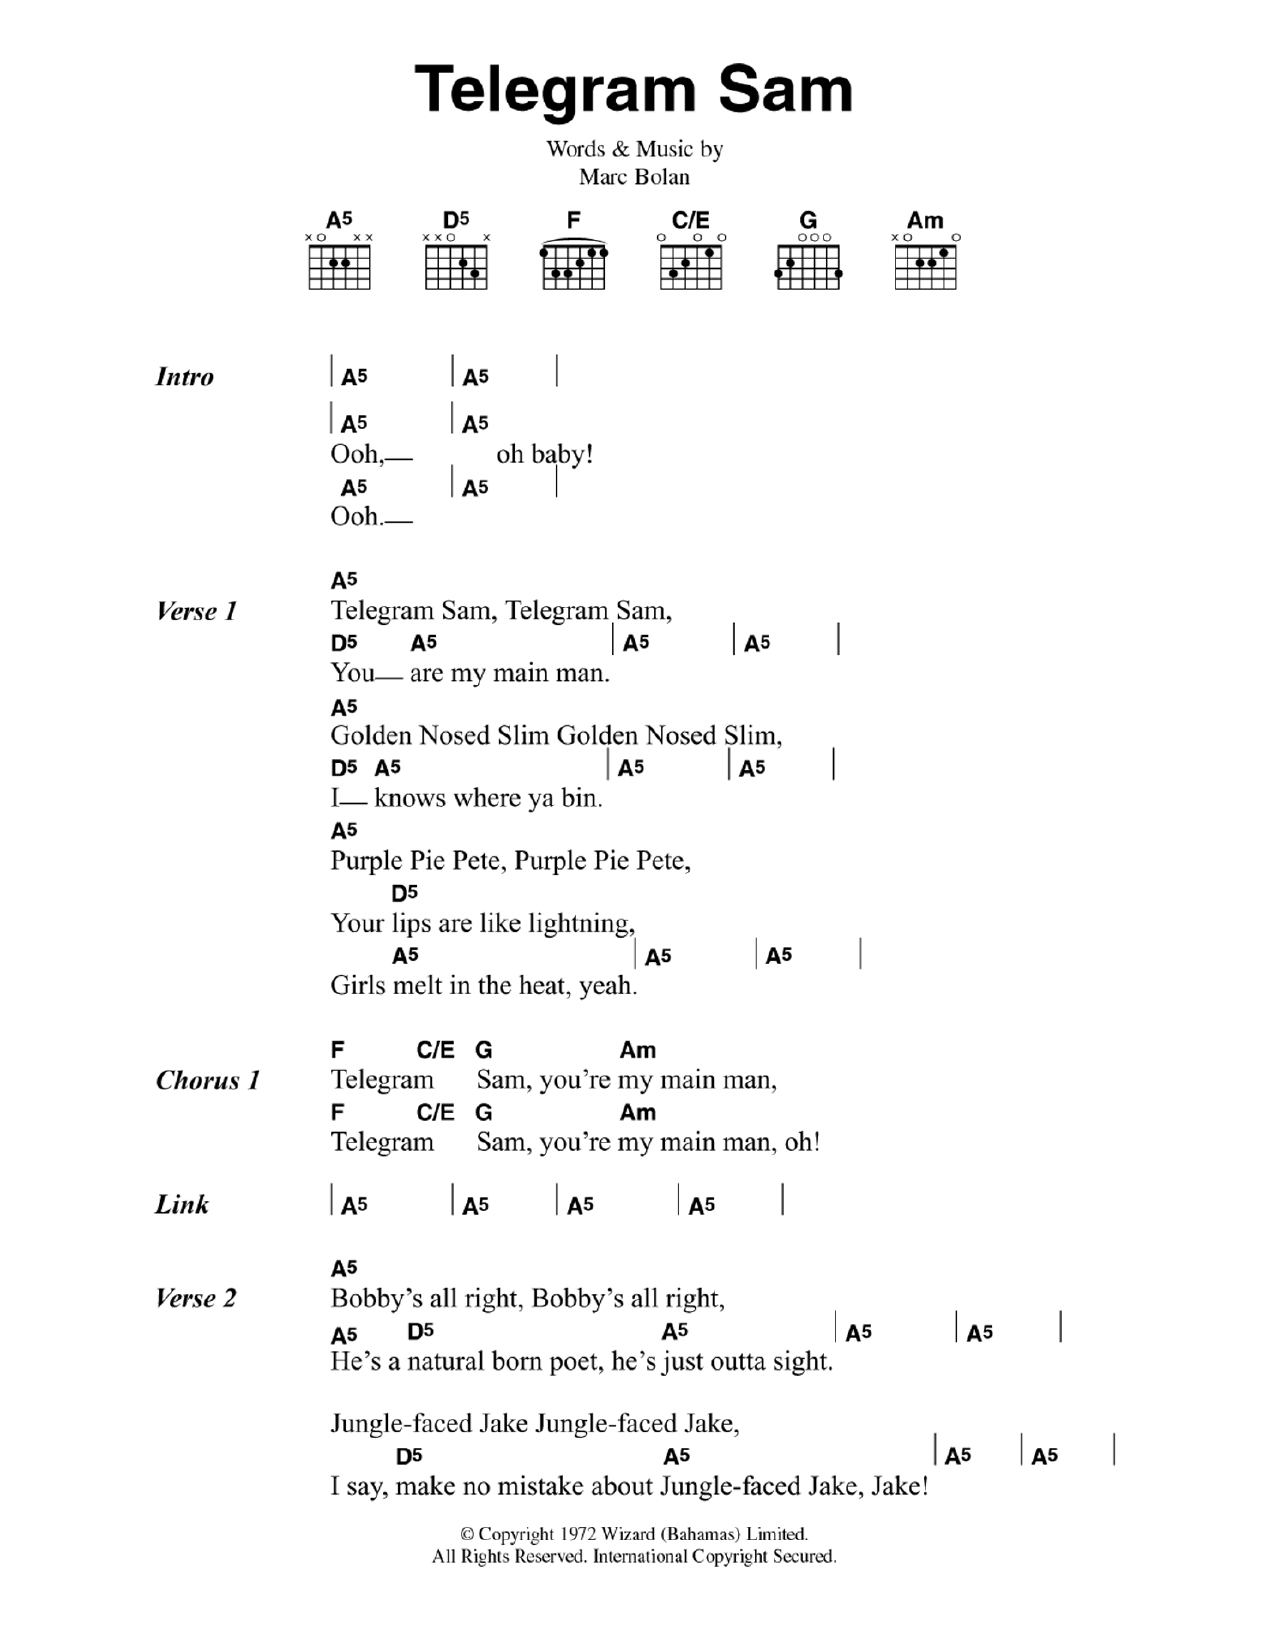 T. Rex Telegram Sam Sheet Music Notes & Chords for Guitar Chords/Lyrics - Download or Print PDF